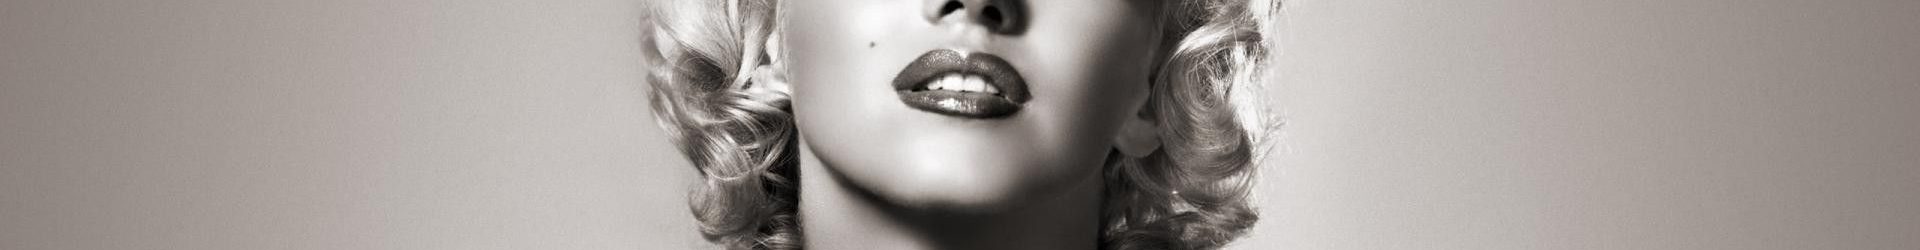 Marilyn, l’icona sexy così poco femminile – di EUGENIO SCALFARI da “L’espresso”